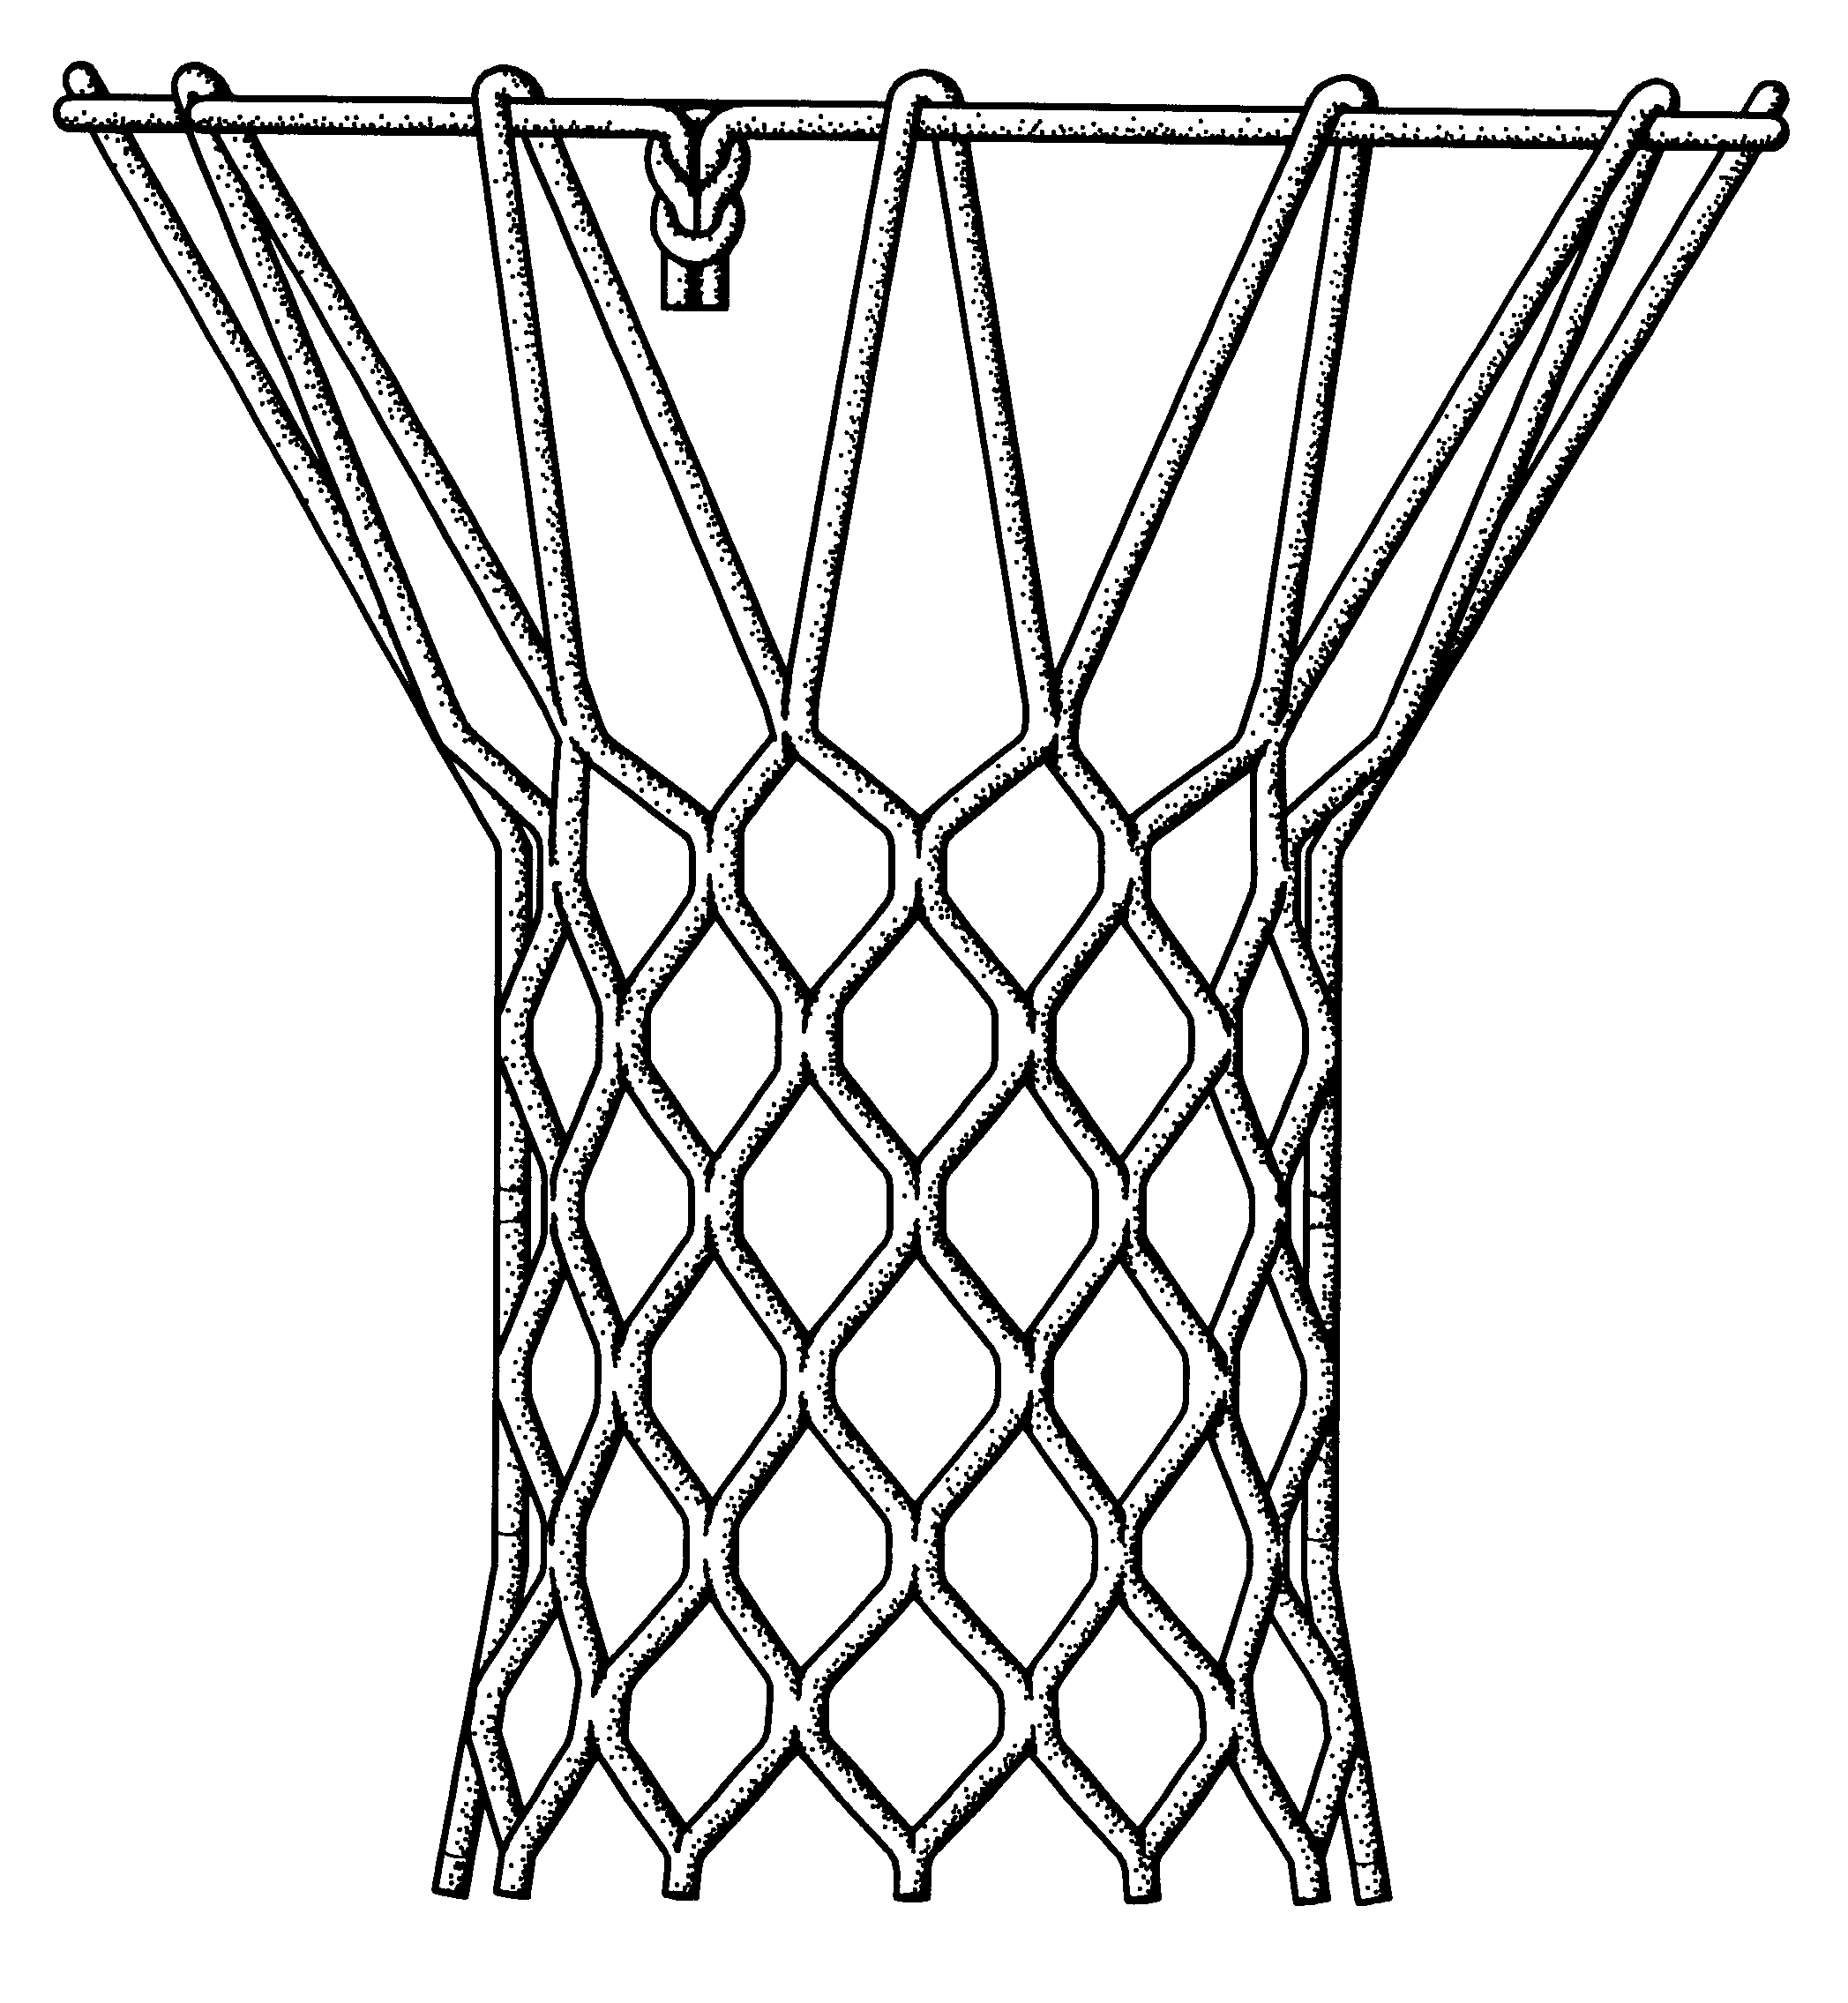 16 Free Vector Basketball Net Images Basketball Net Clip Art